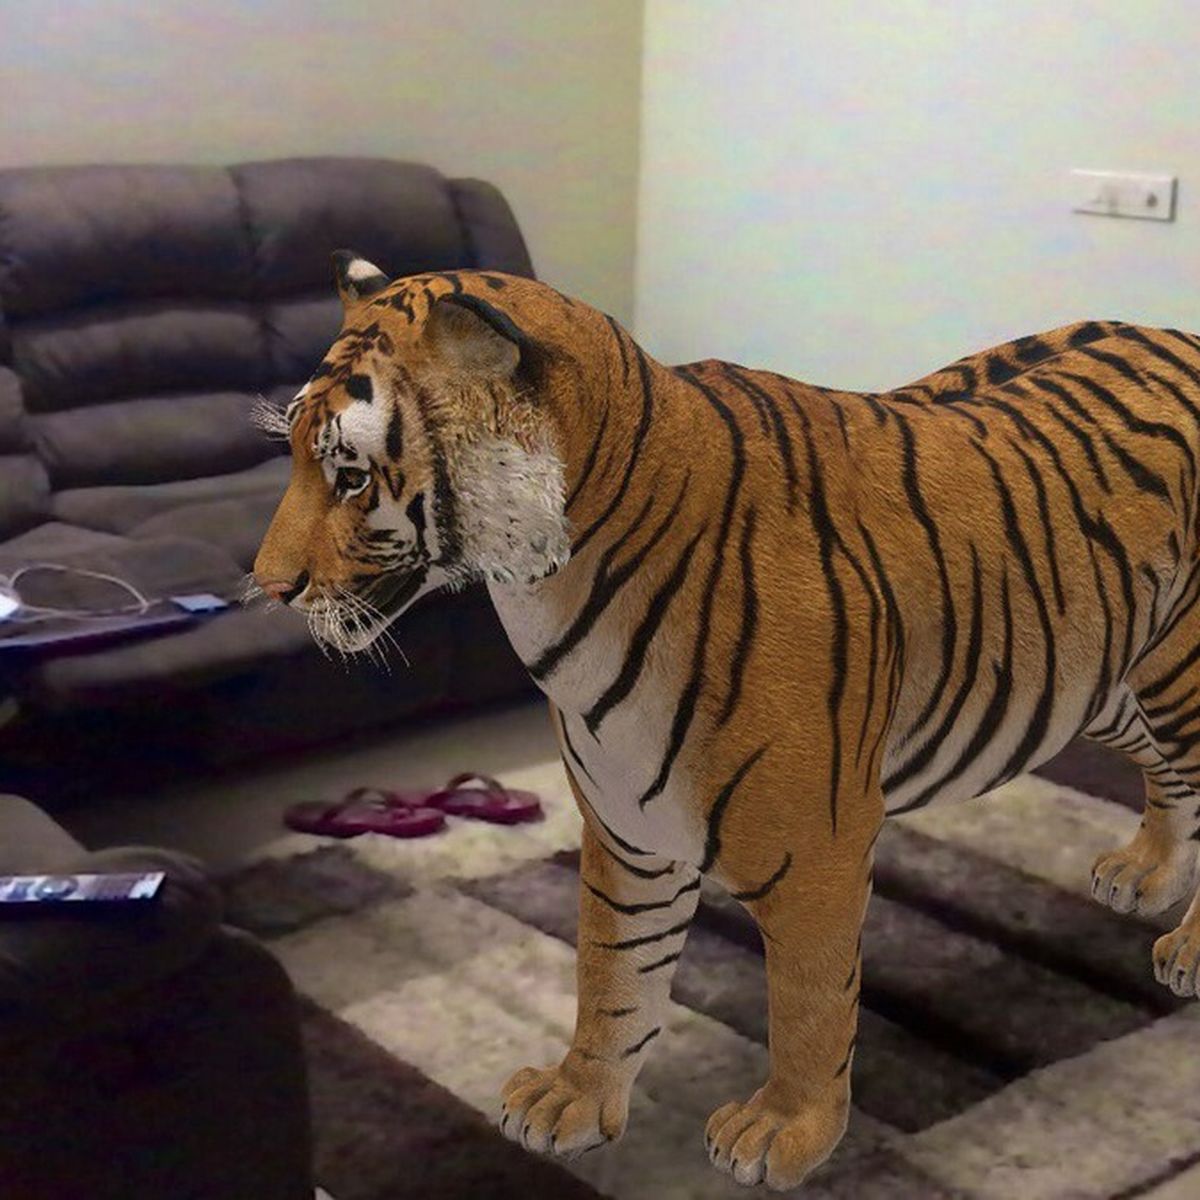 Como activar la realidad aumentada de google para ver animales en 3D   𝗡𝗨𝗘𝗩𝗔 𝗜𝗗𝗘𝗔 𝗣𝗔𝗥𝗔 𝗘𝗡𝗧𝗥𝗘𝗧𝗘𝗡𝗘𝗥 𝗔 𝗟𝗢𝗦 𝗣𝗘𝗤𝗨𝗘𝗦  🐅🐊🦈🐎🐏🐆🐙🐑🐕🐻🐶🐧🦆🐍 En estos días de confinamiento, hay que  entretenerlos como sea, os